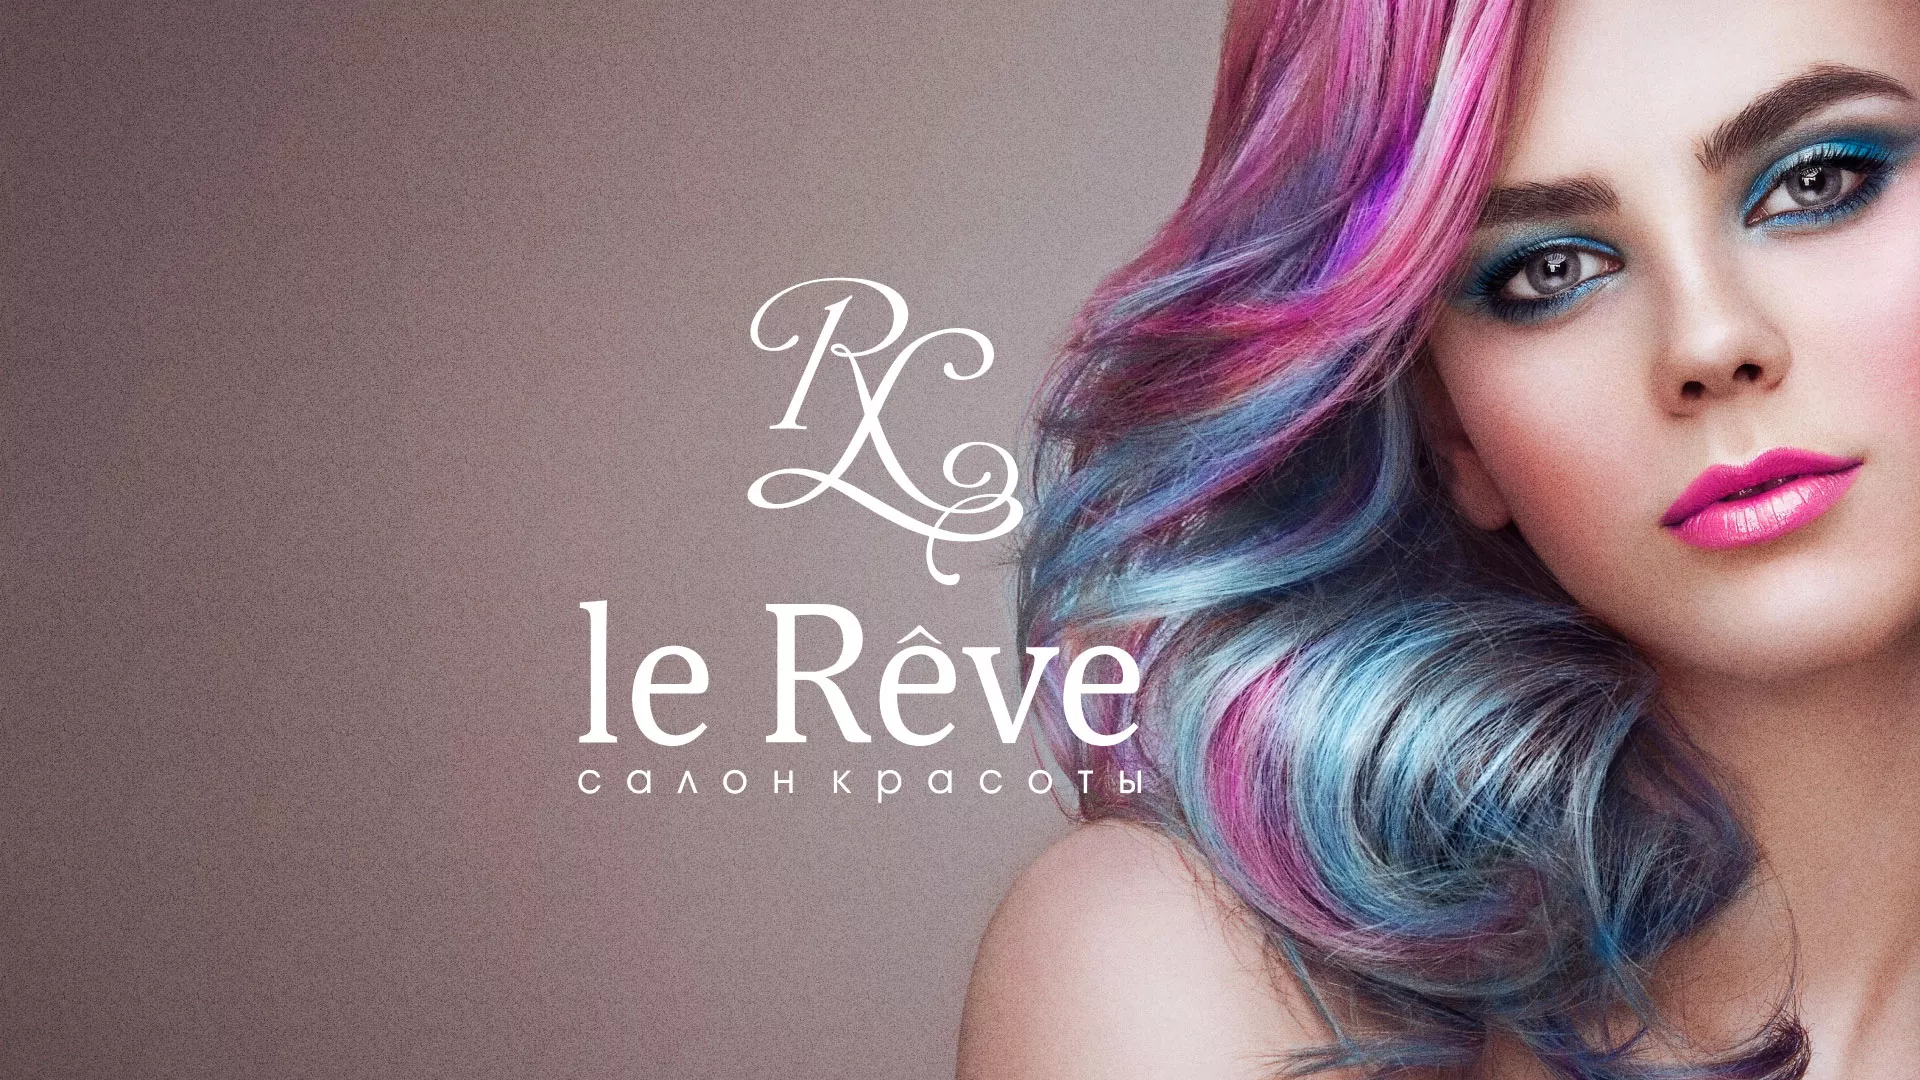 Создание сайта для салона красоты «Le Reve» в Рыбном